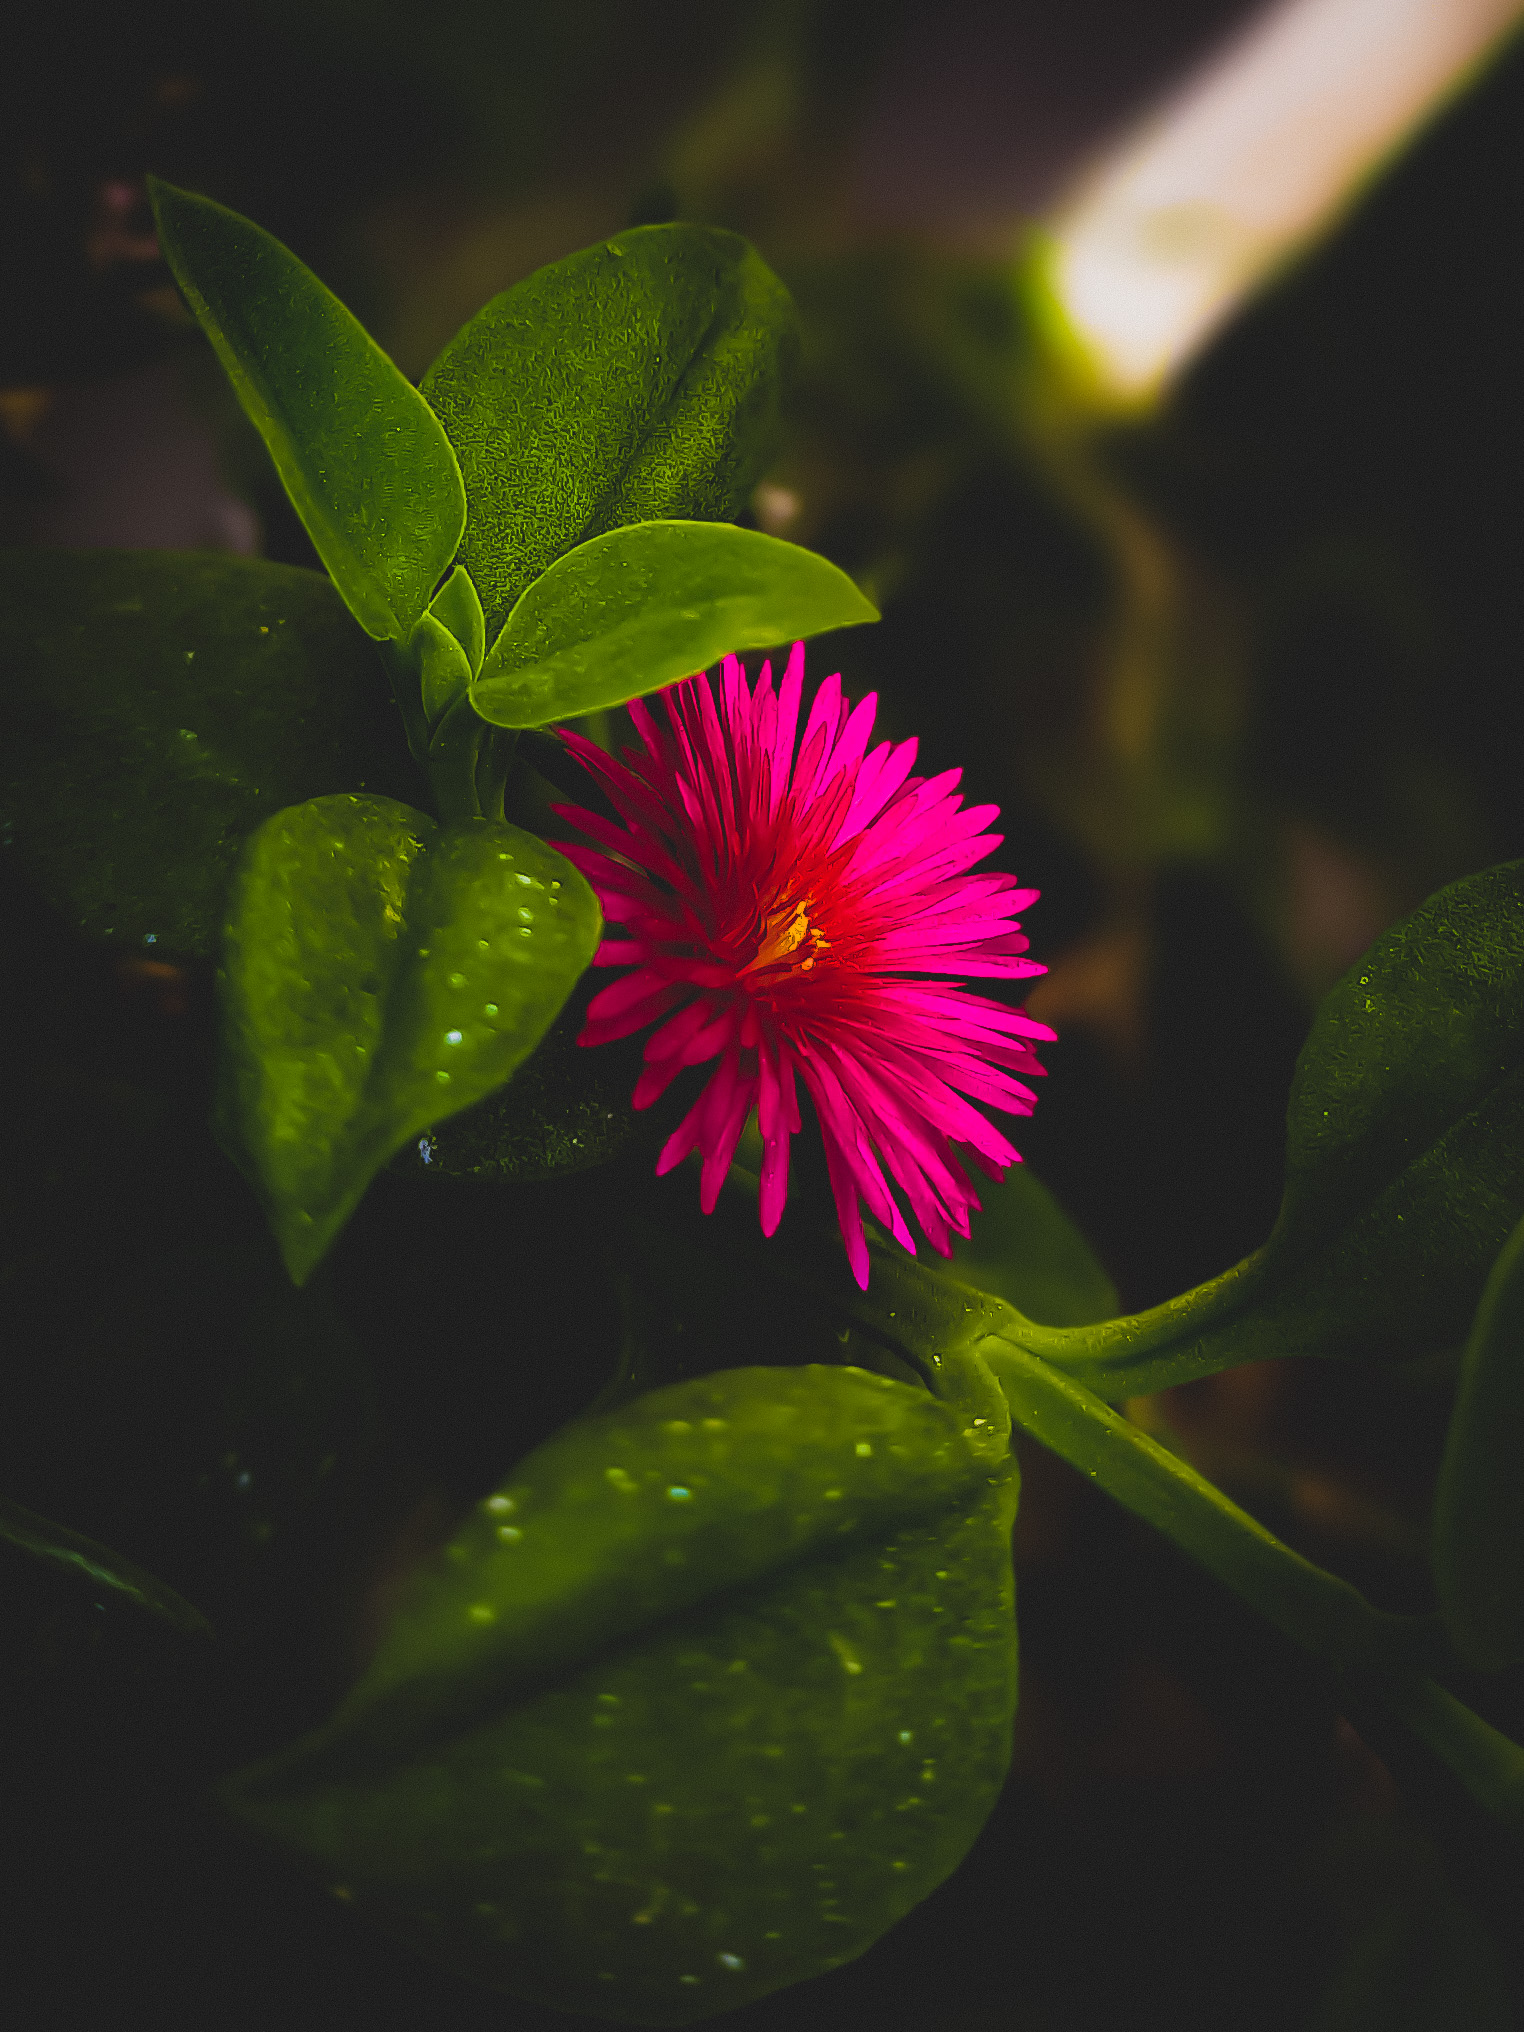 Flower in a garden